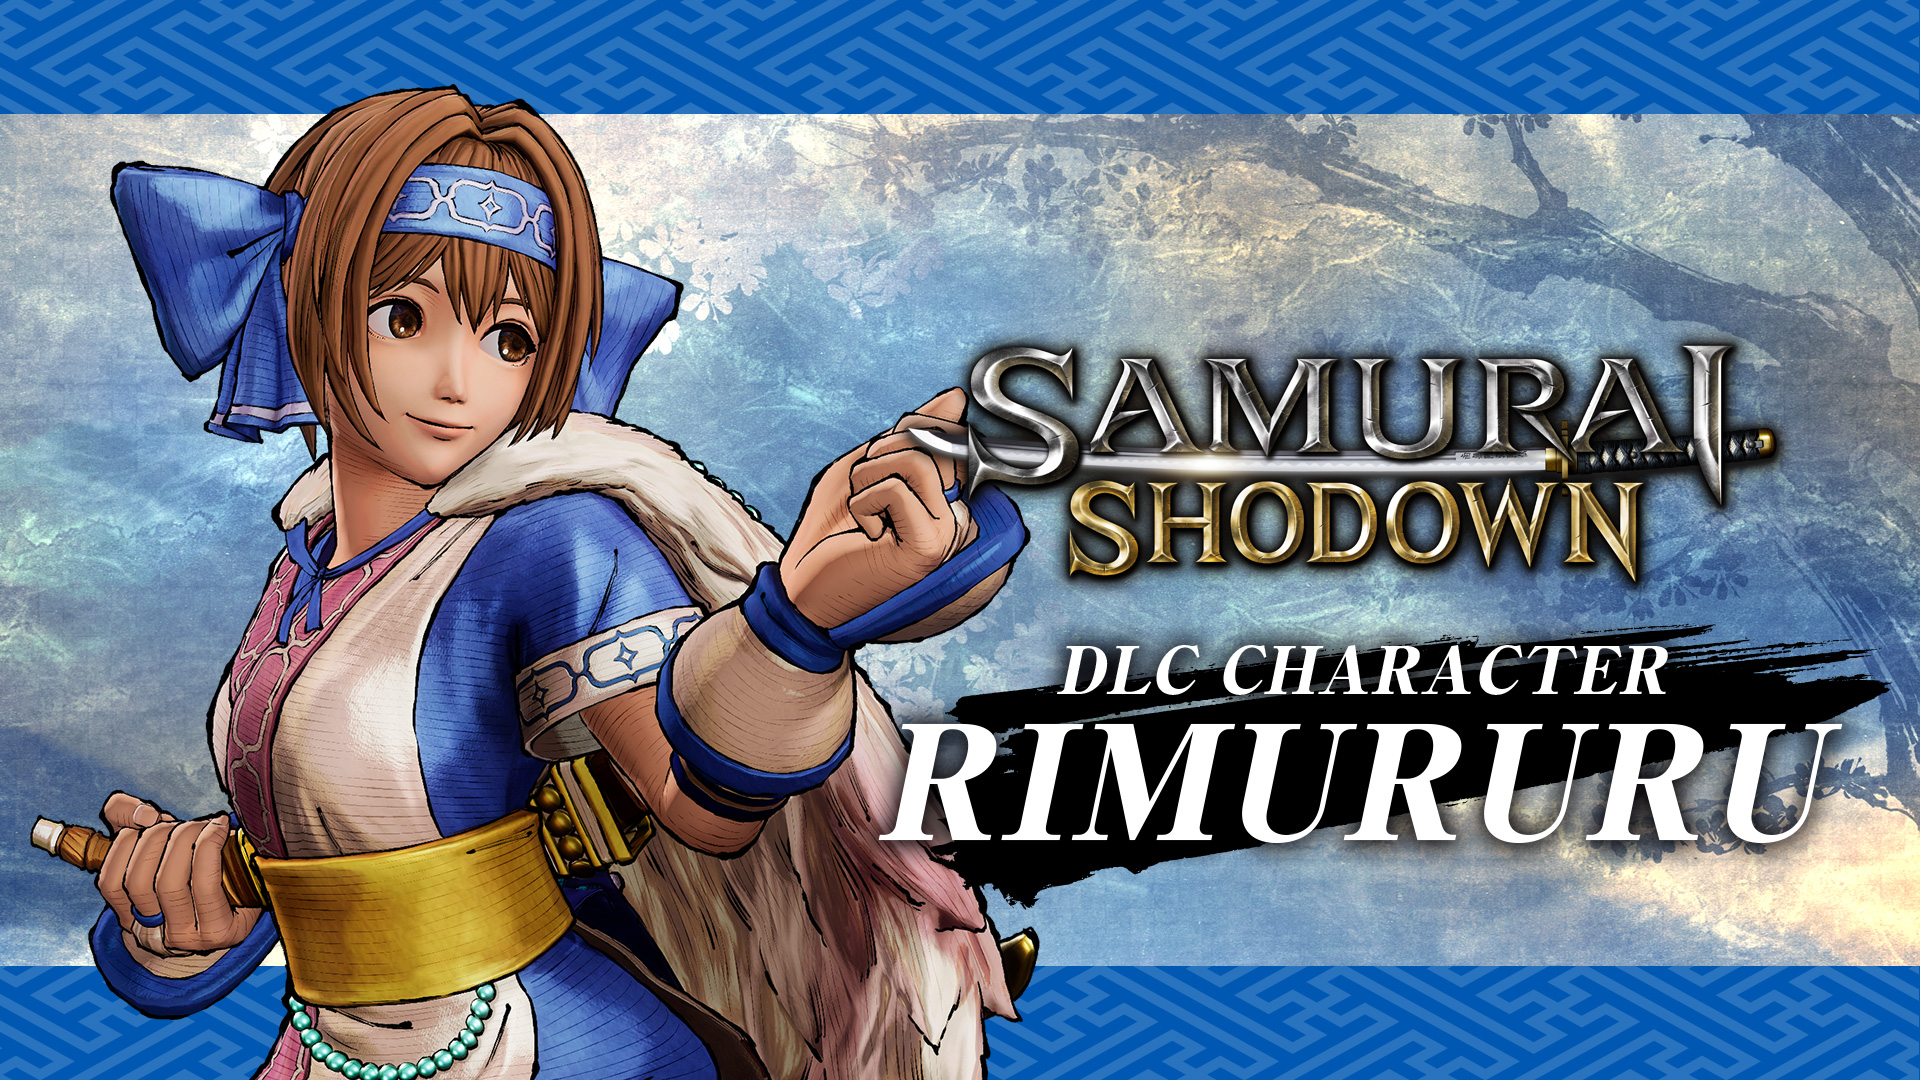 SAMURAI SHODOWN: CHARACTER "RIMURURU"